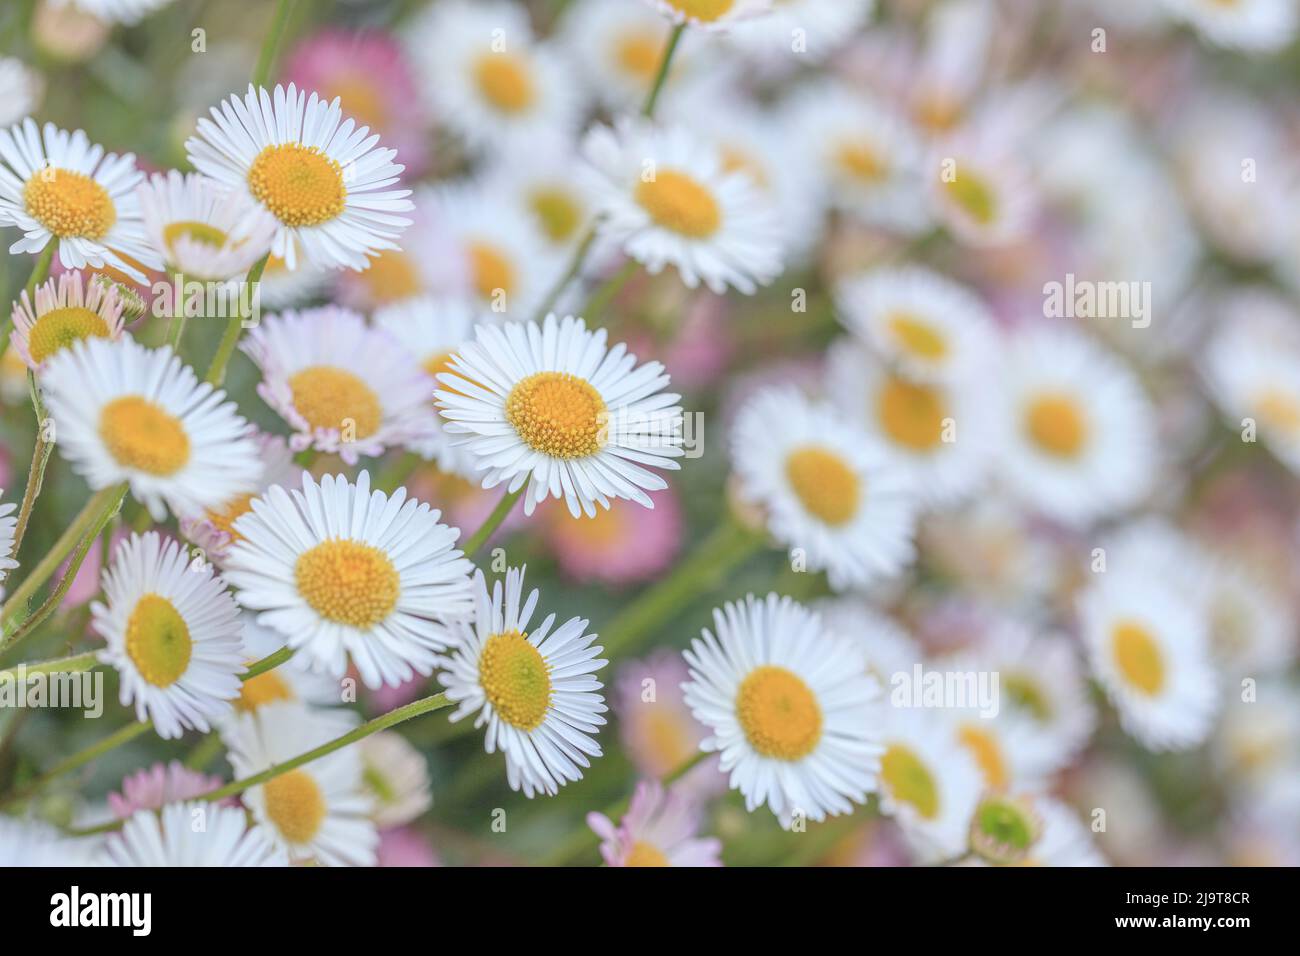 USA, Washington State, Seabeck. Close-up of Santa Barbara daisies. Stock Photo